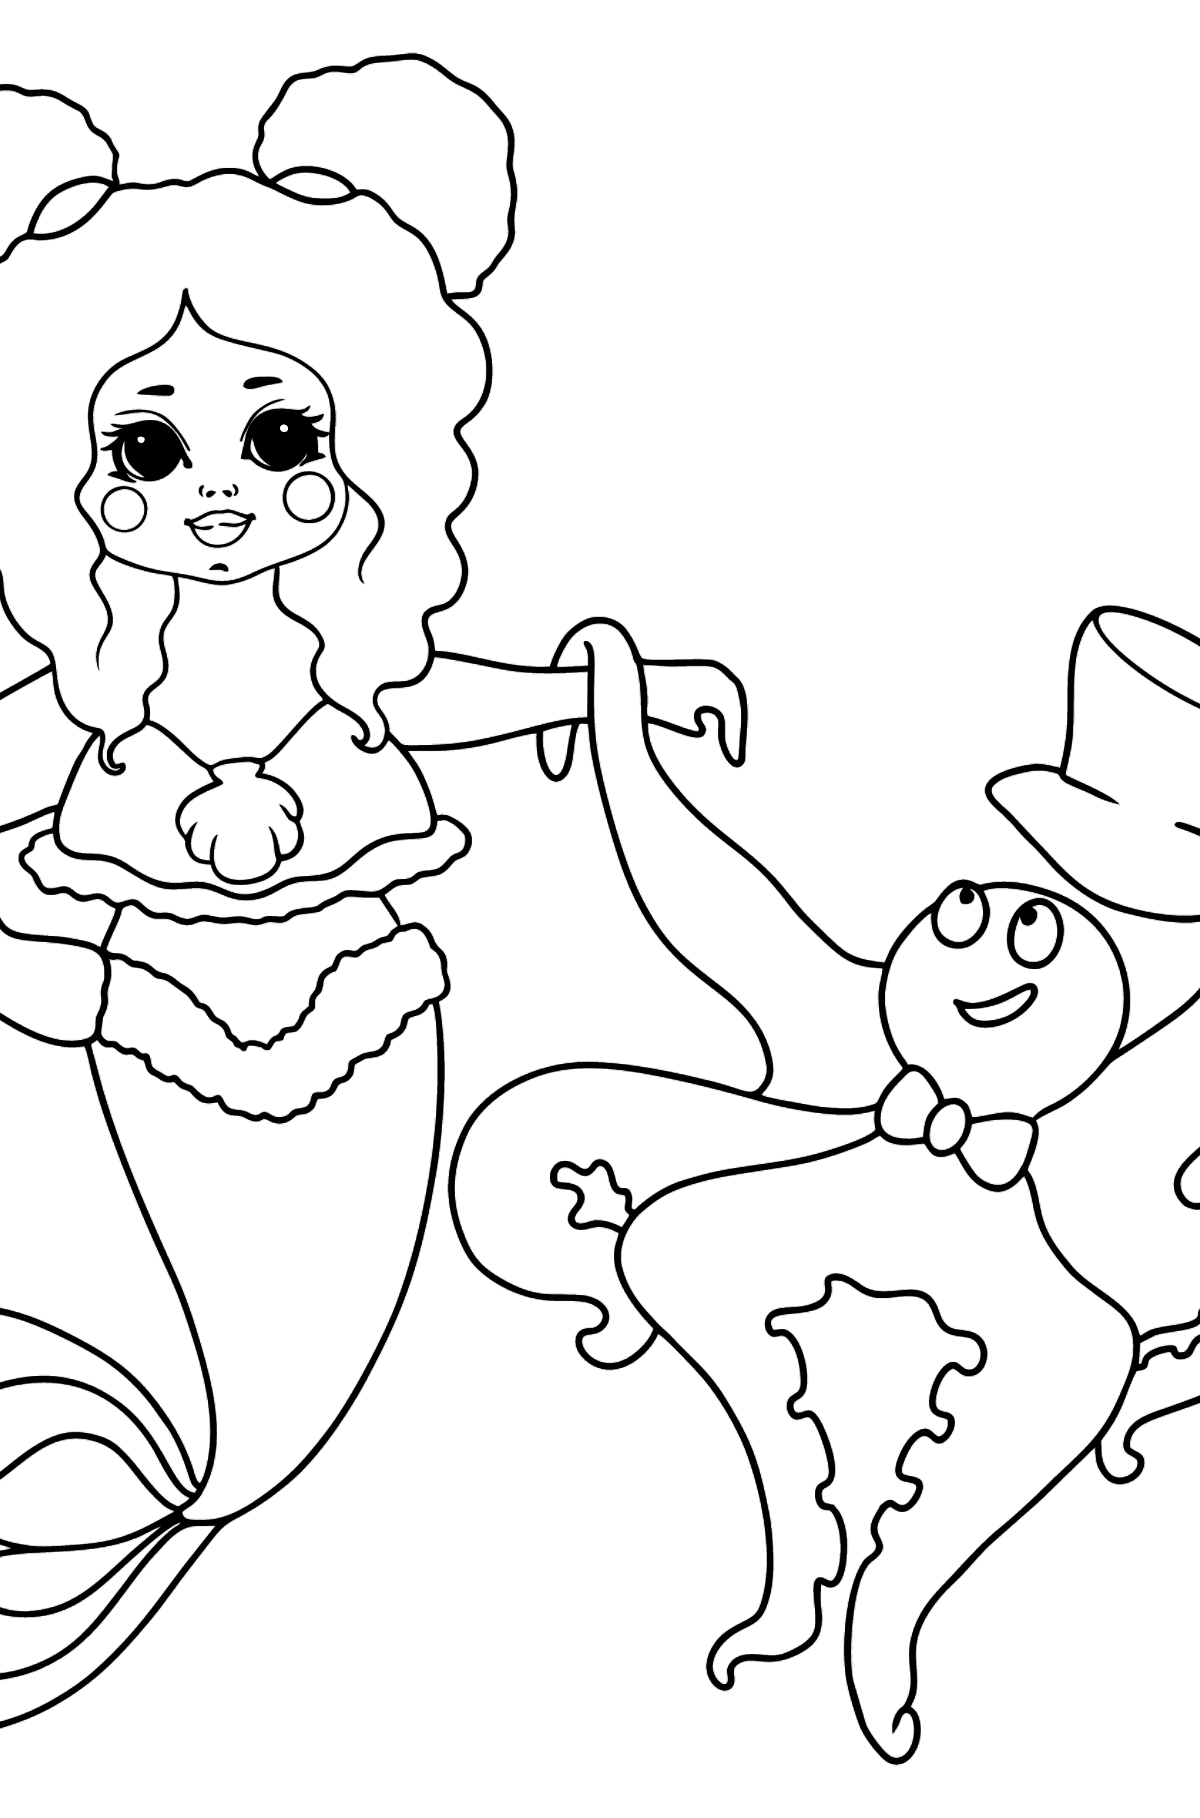 Dibujo de Sirena y Pulpo para colorear - Dibujos para Colorear para Niños